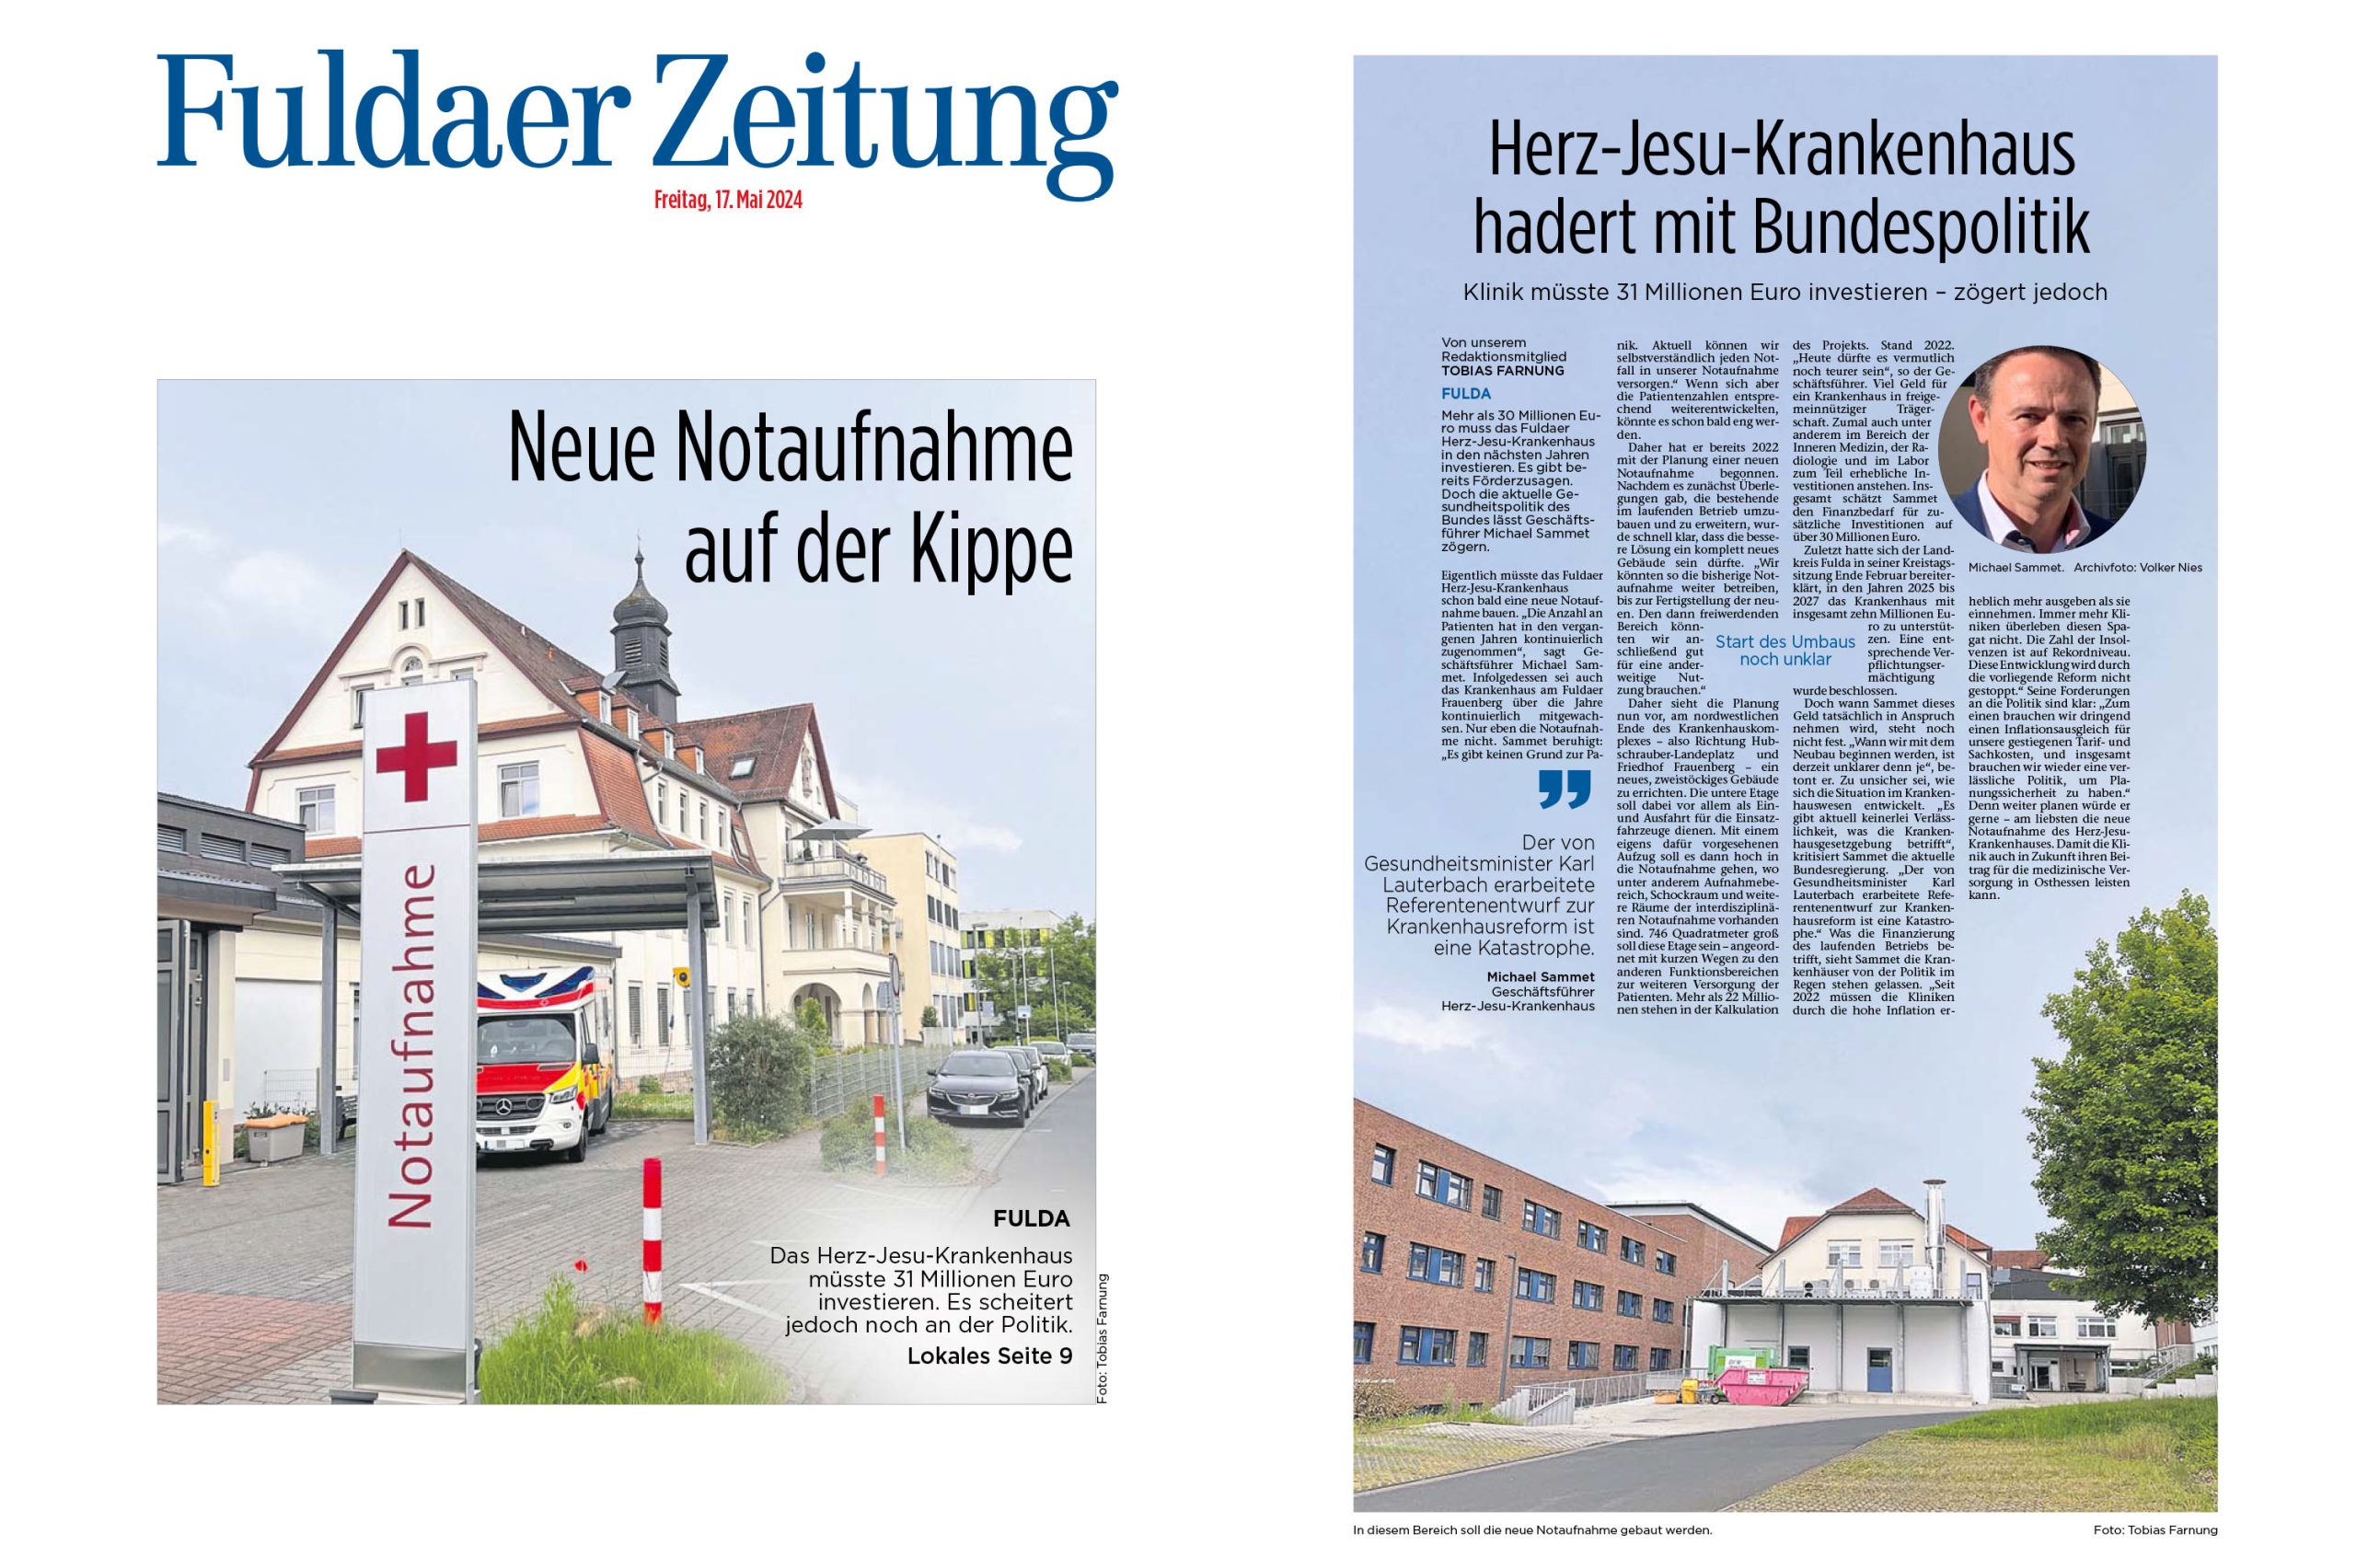 Fuldaer Zeitung: Herz-Jesu-Krankenhaus hadert mit Bundespolitik - Neue Notaufnahme auf der Kippe